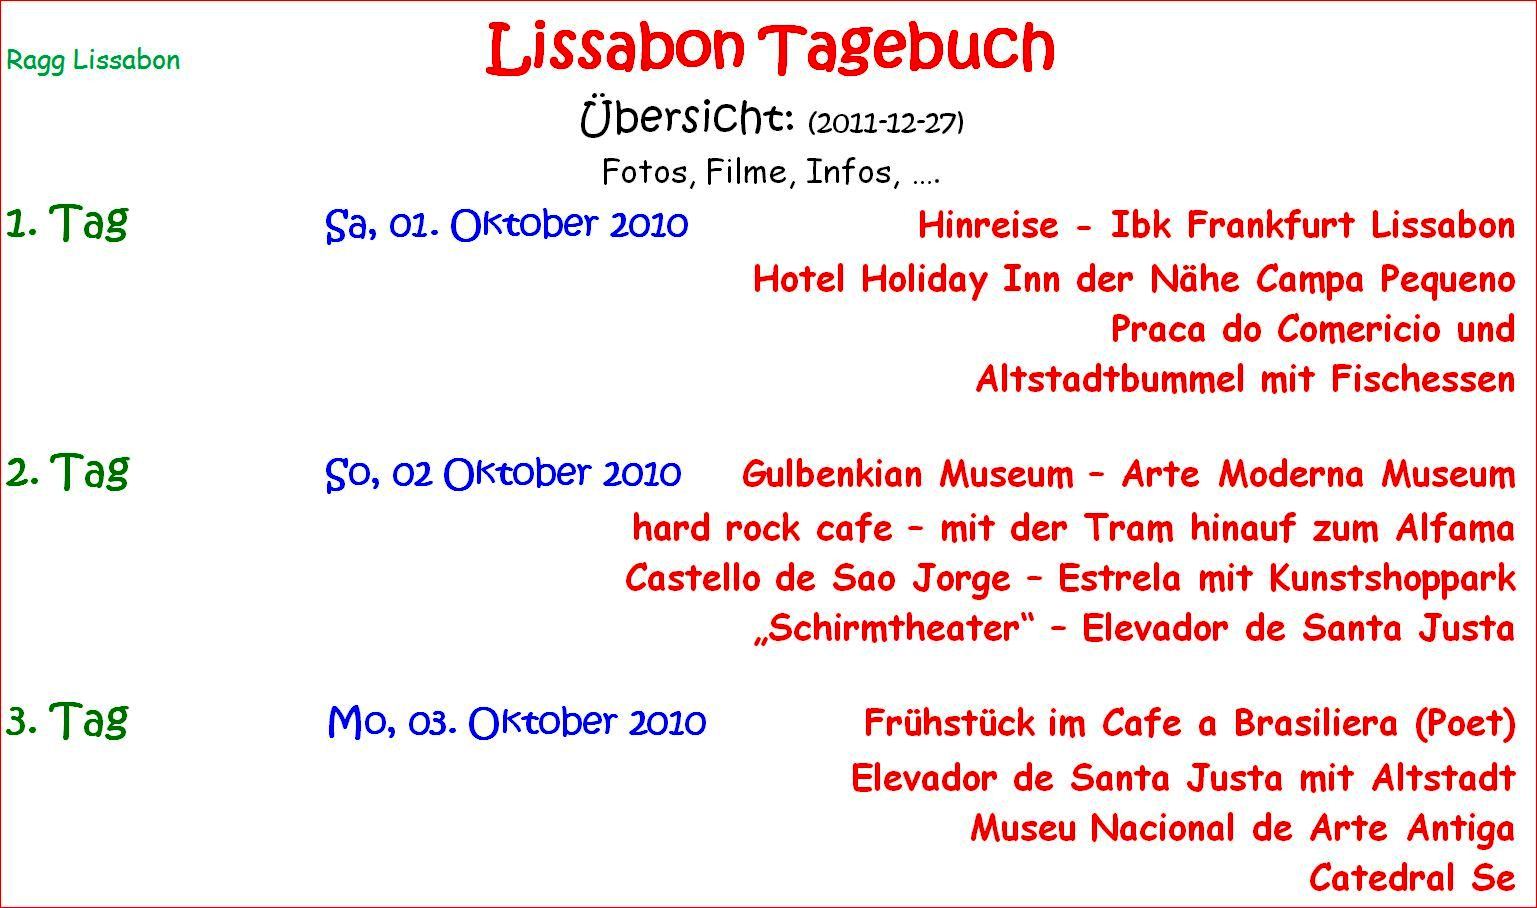 ragg 2010-10-01 -- 10-06 - 1310AA - Lissabon - Seite 02 Übersicht - Text - Bild 01 - B